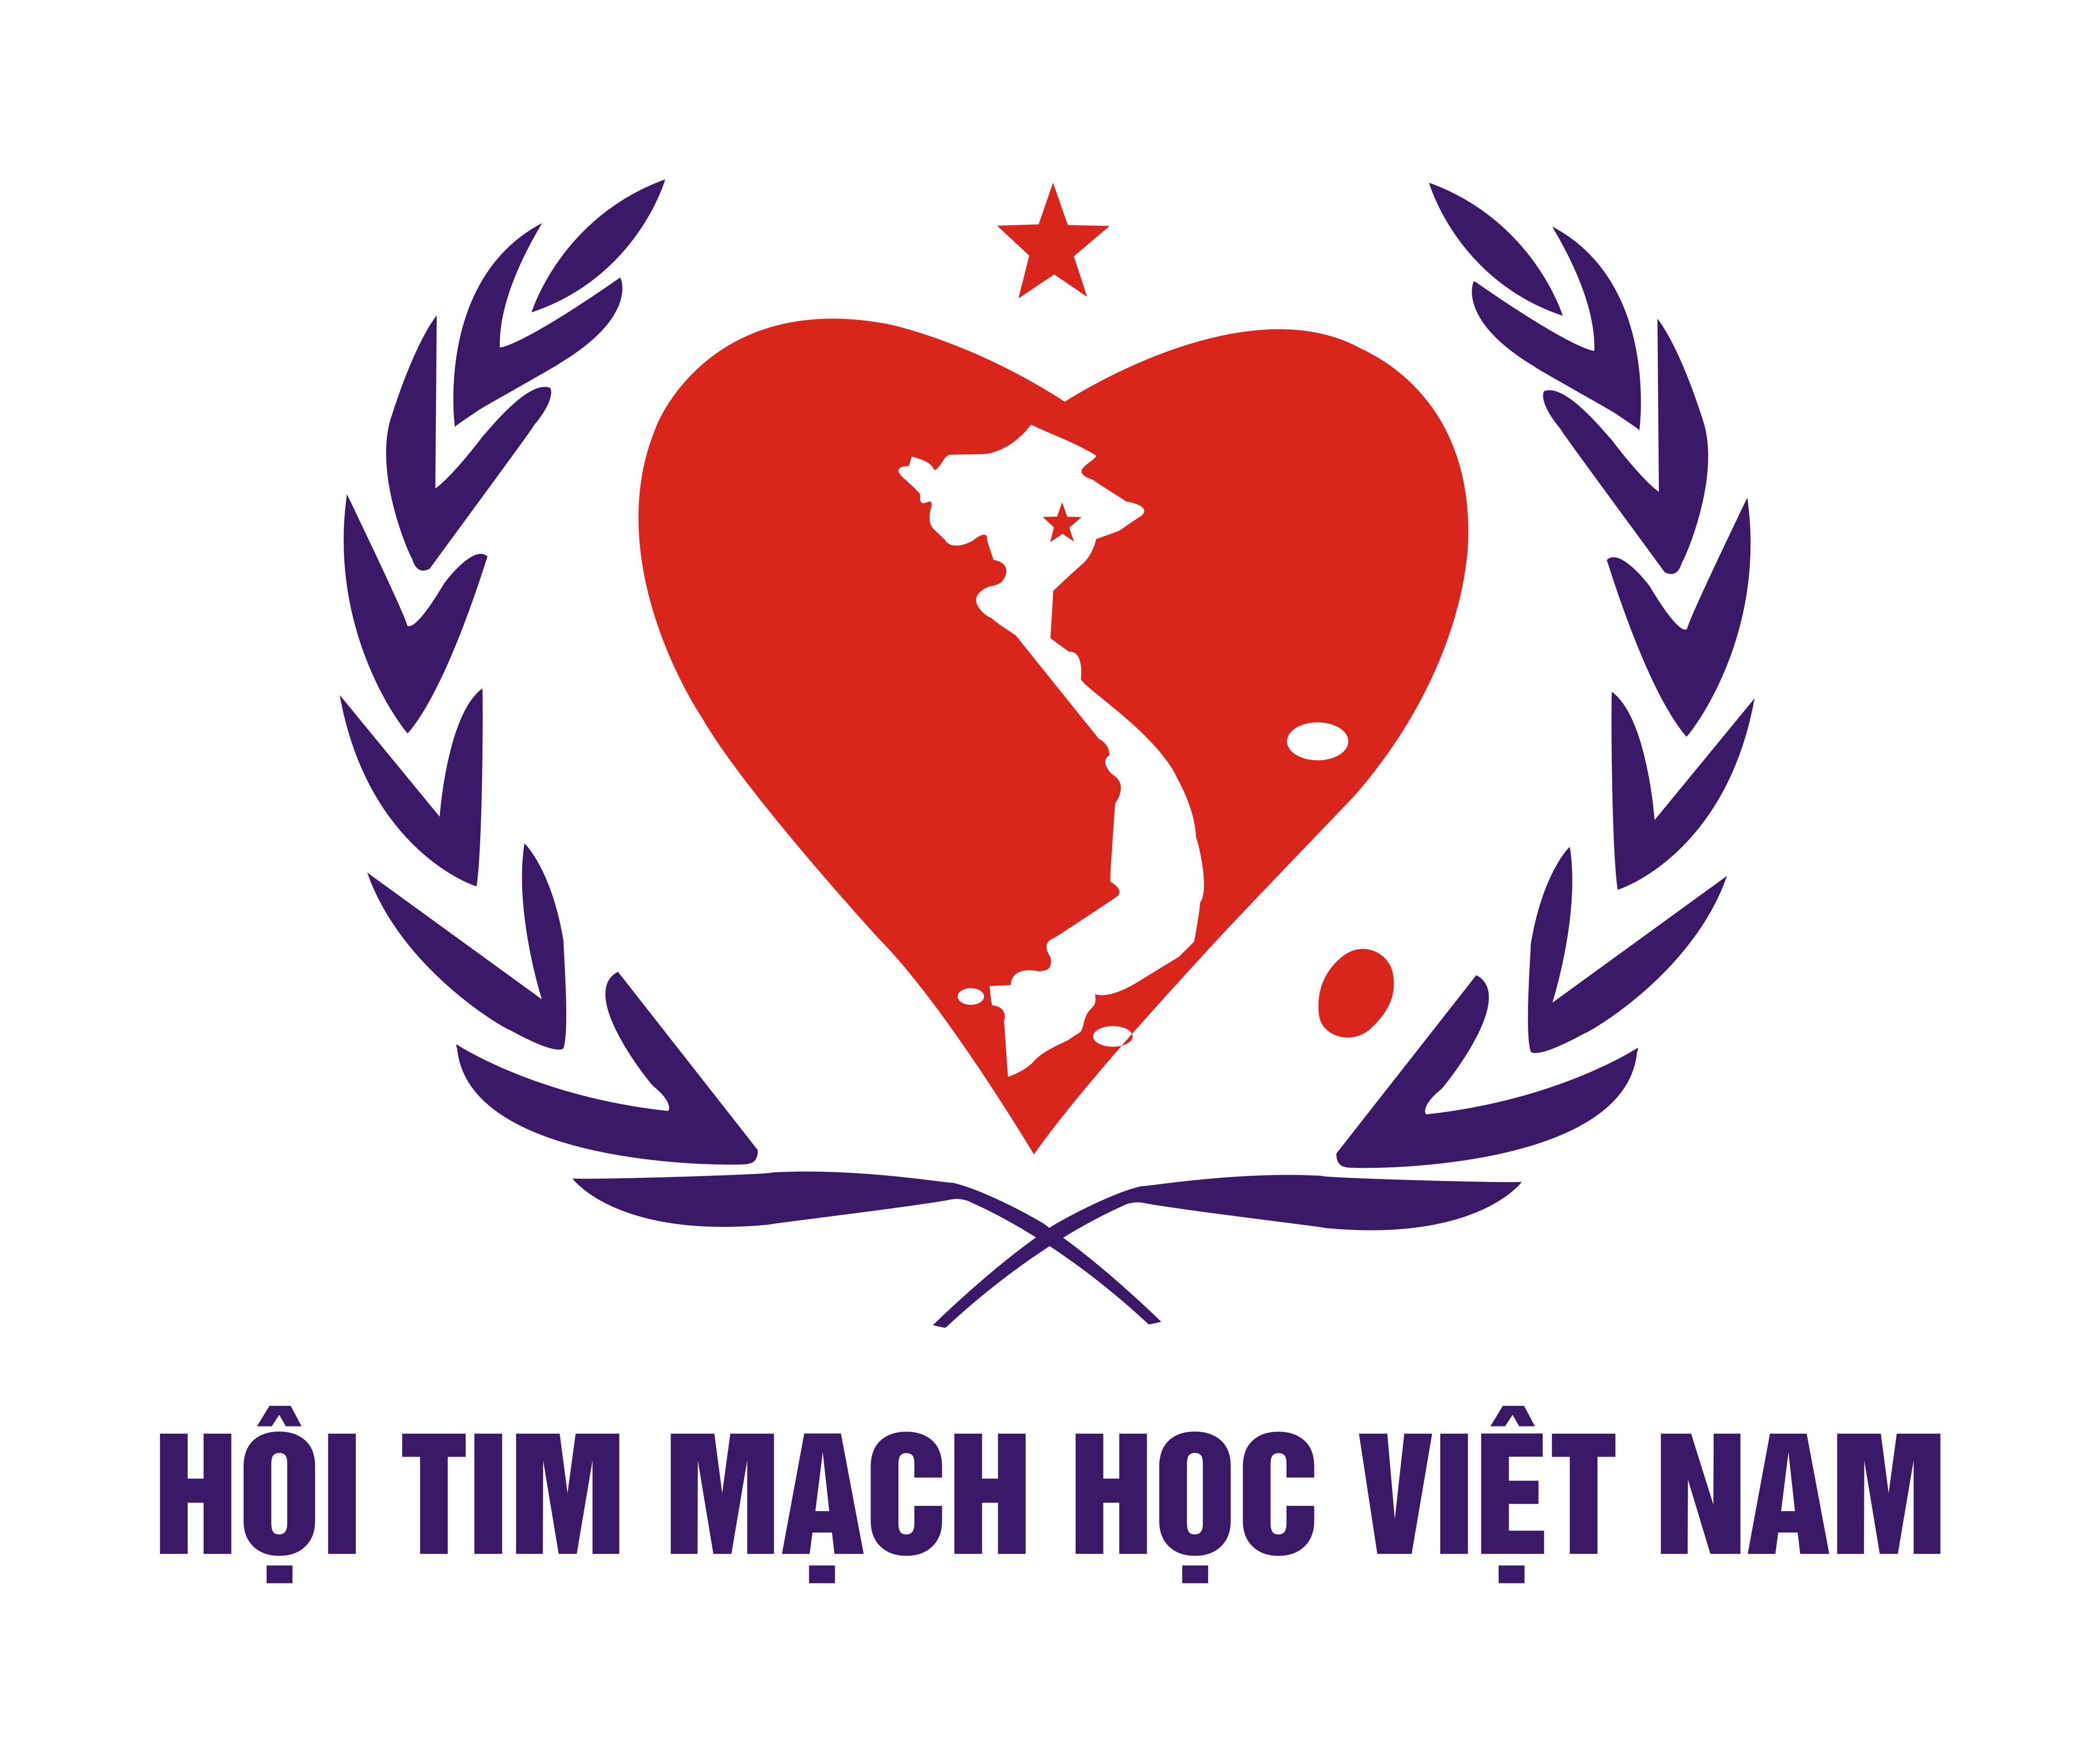 Hội Tim mạch Học Việt Nam